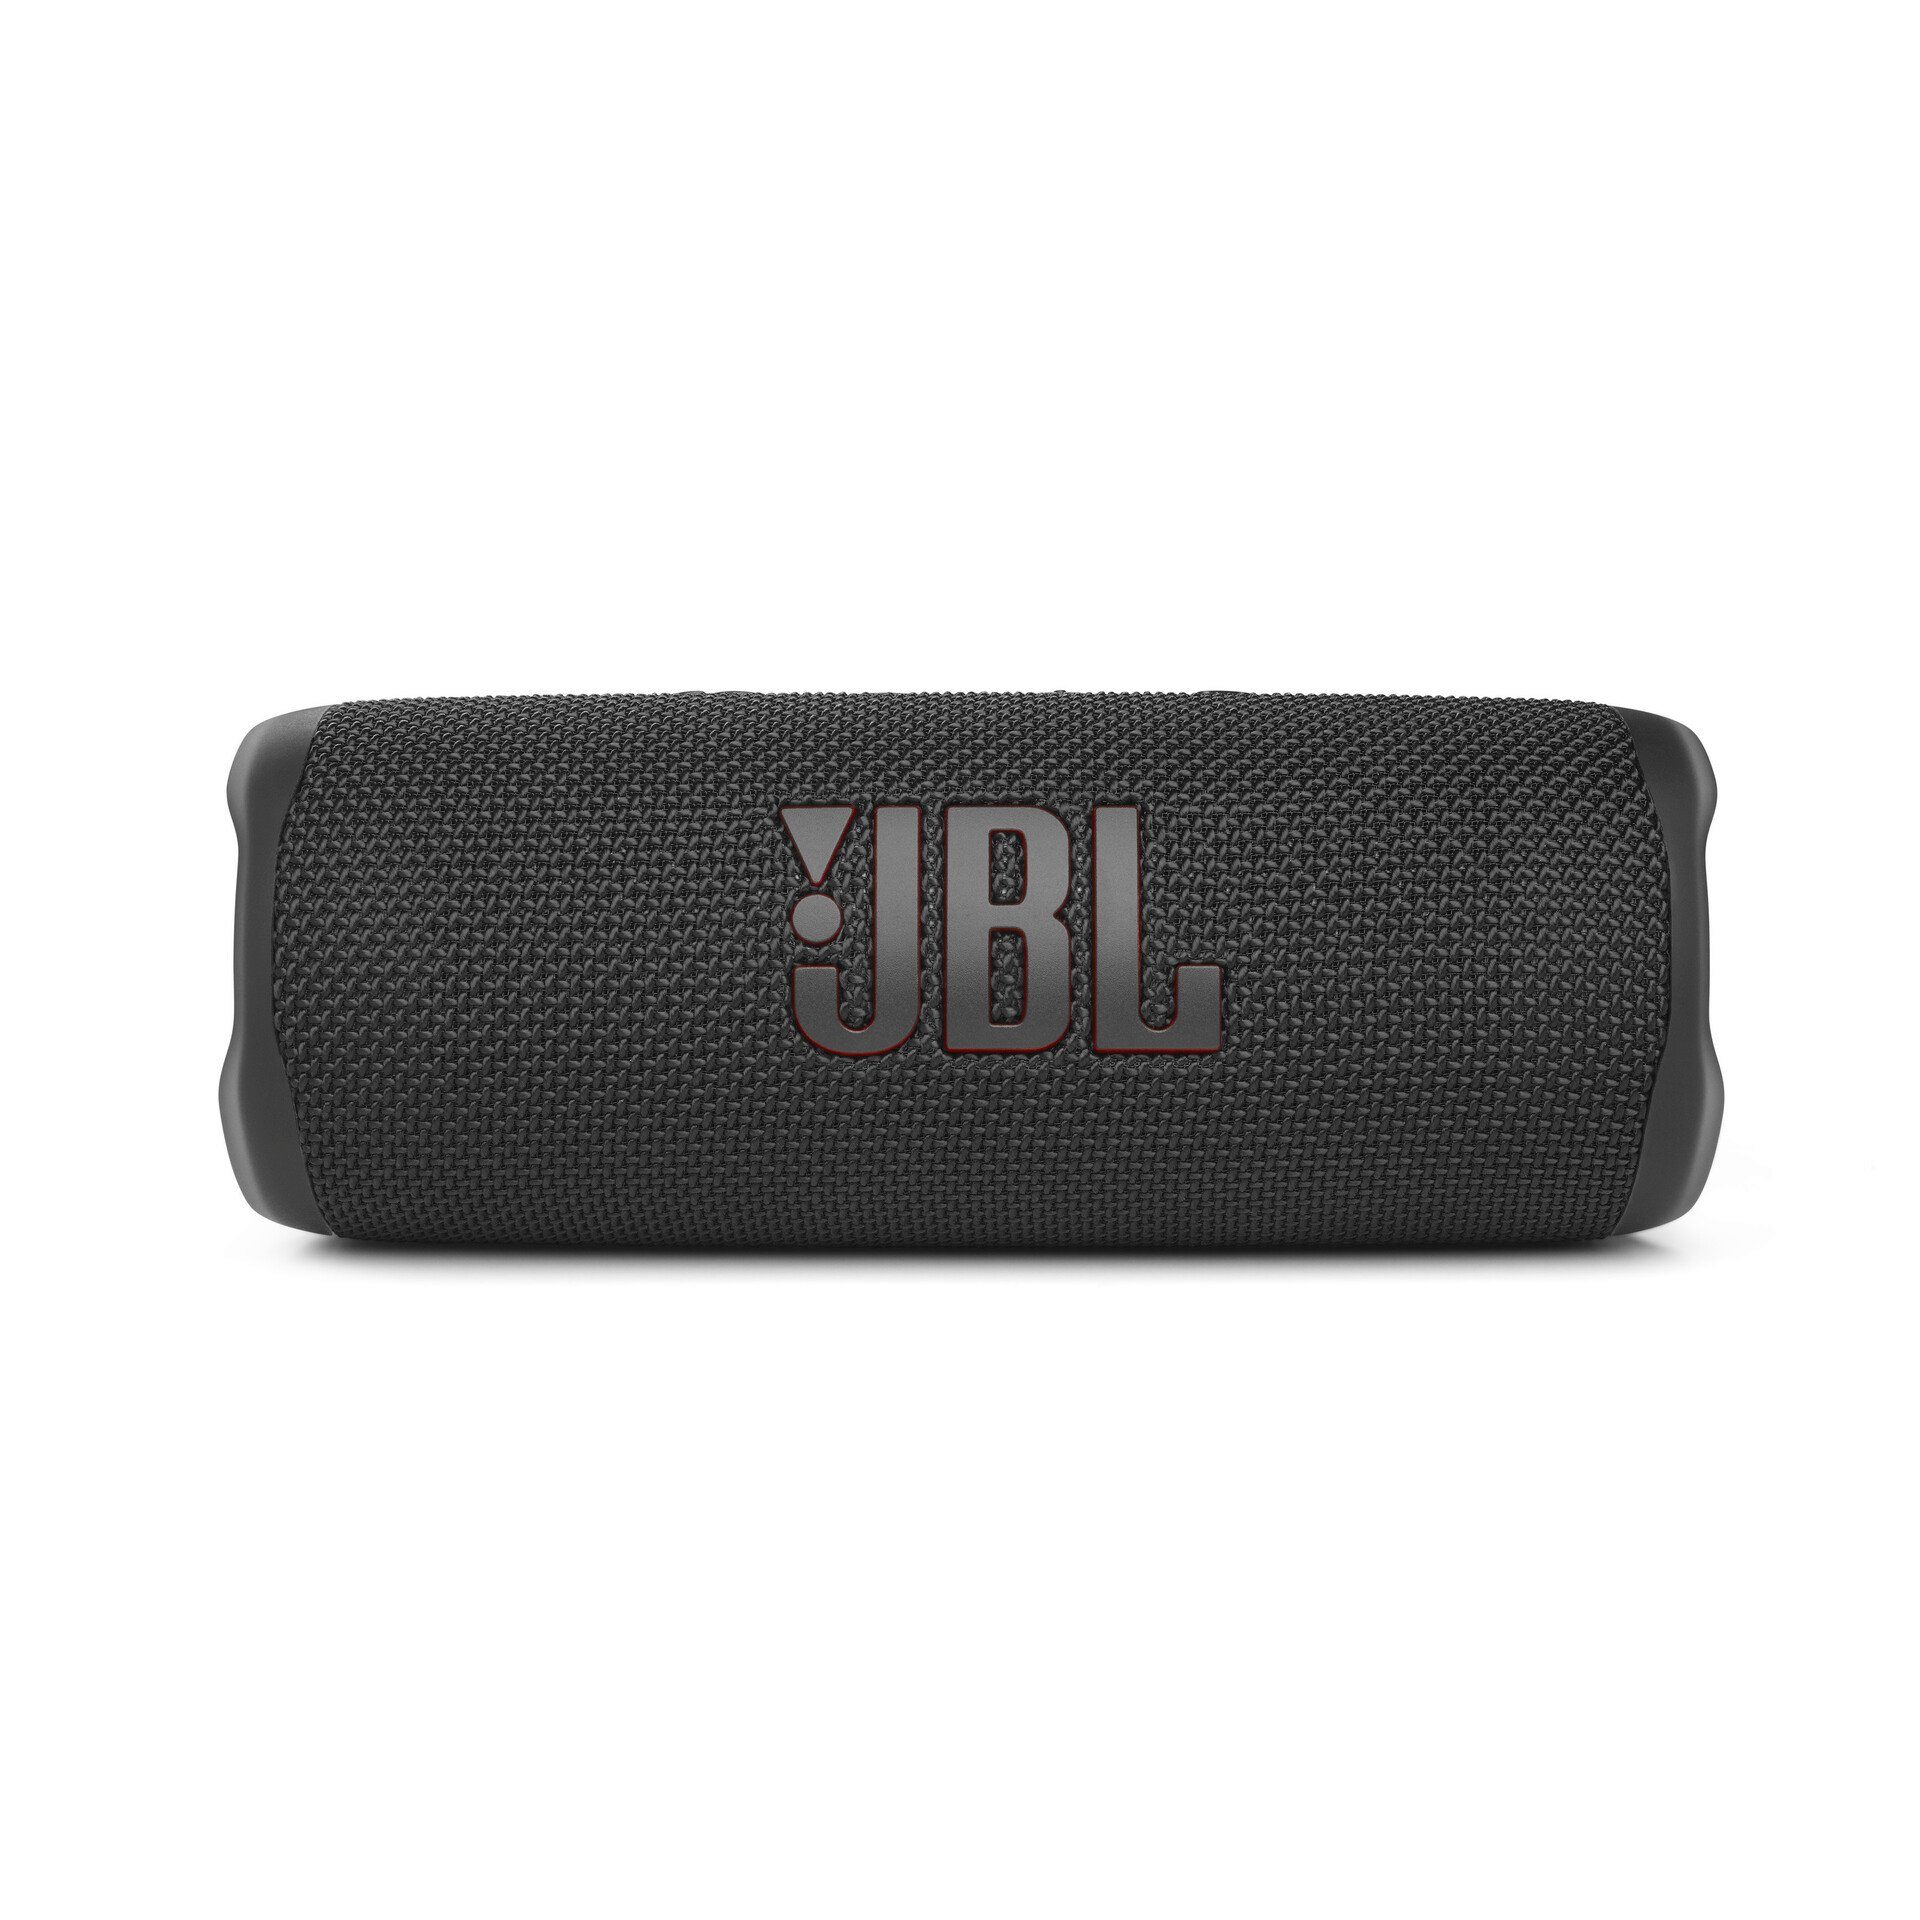 Echtes Produkt für ein beruhigendes Gefühl JBL FLIP 6 Lautsprecher (Bluetooth, 30 W) schwarz